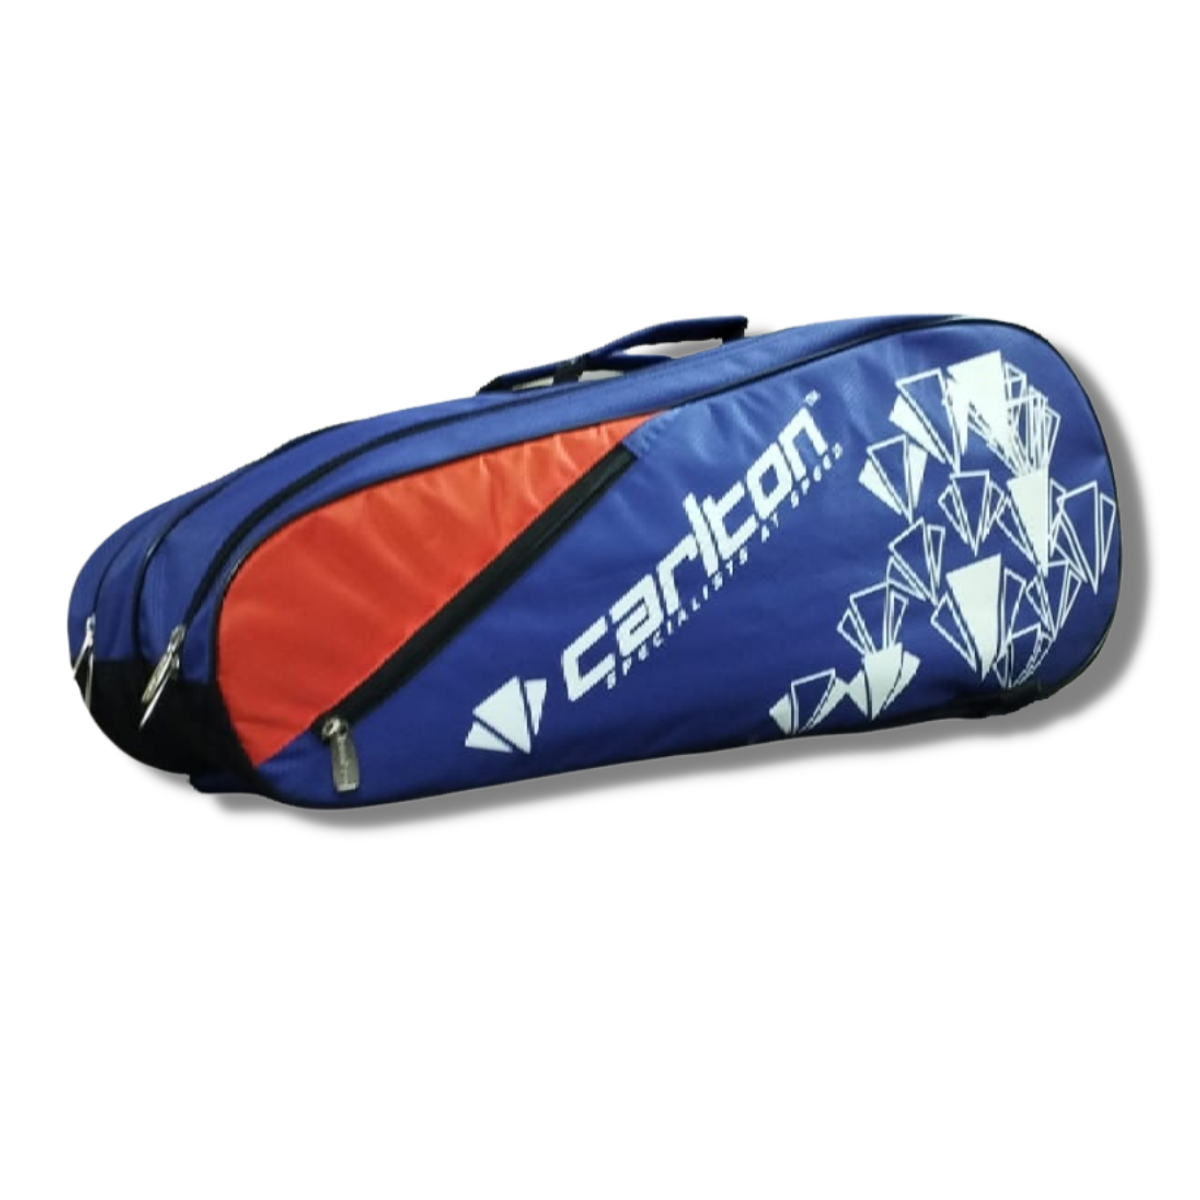 Carlton Vapour Trial 2 Compartment Badminton Kit Bag (Blue/Red)